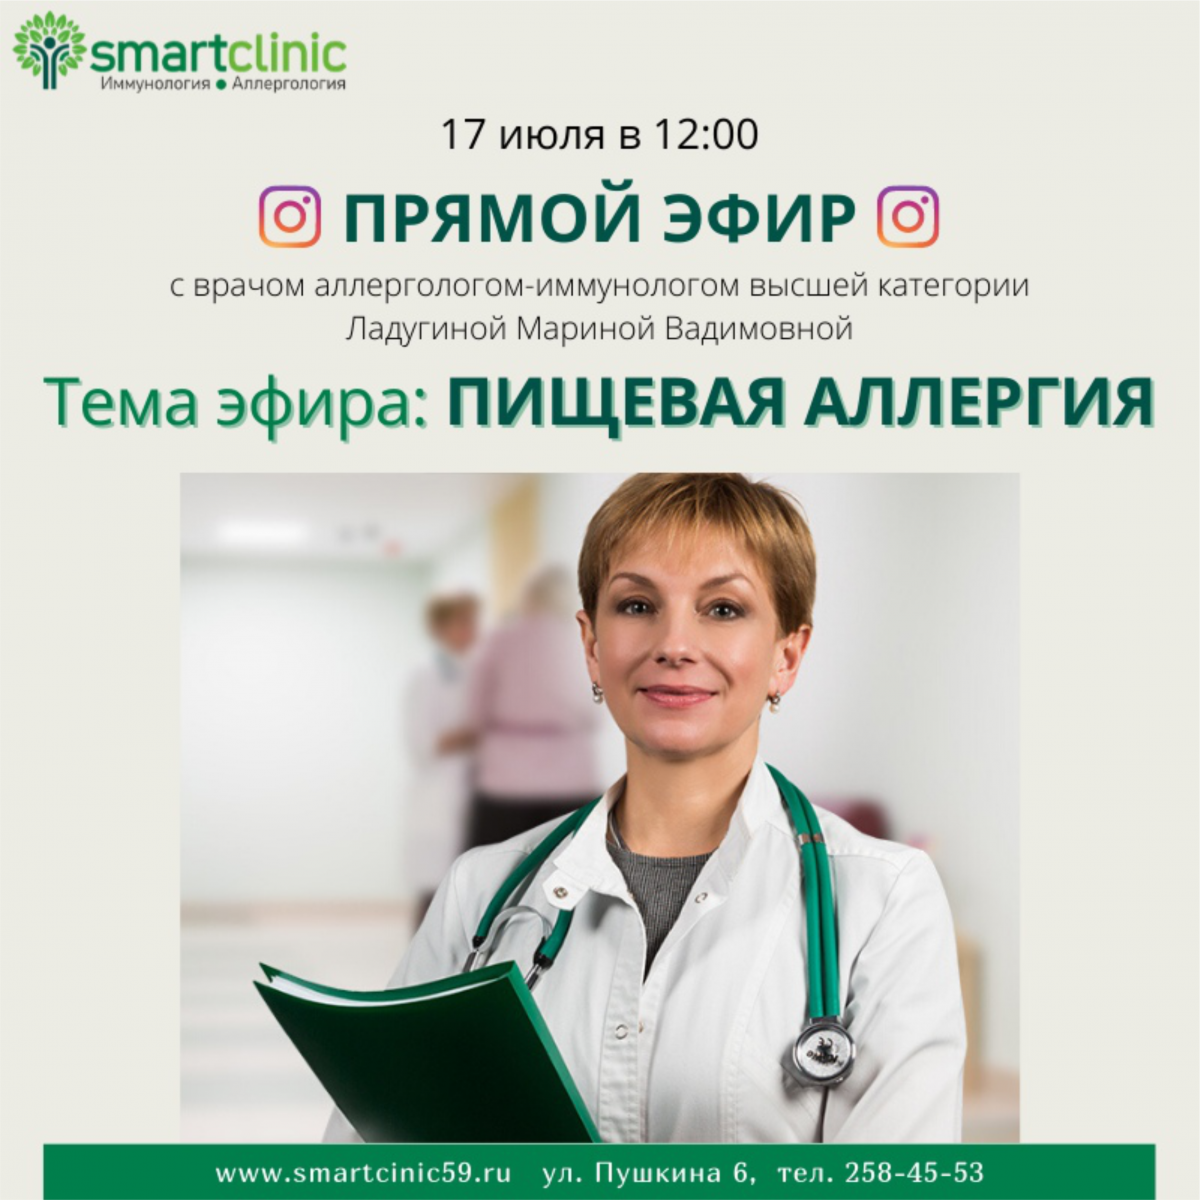 \"Прямой эфир\" - новый проект SmartClinic — возможность задать интересующие вас вопросы в режиме online